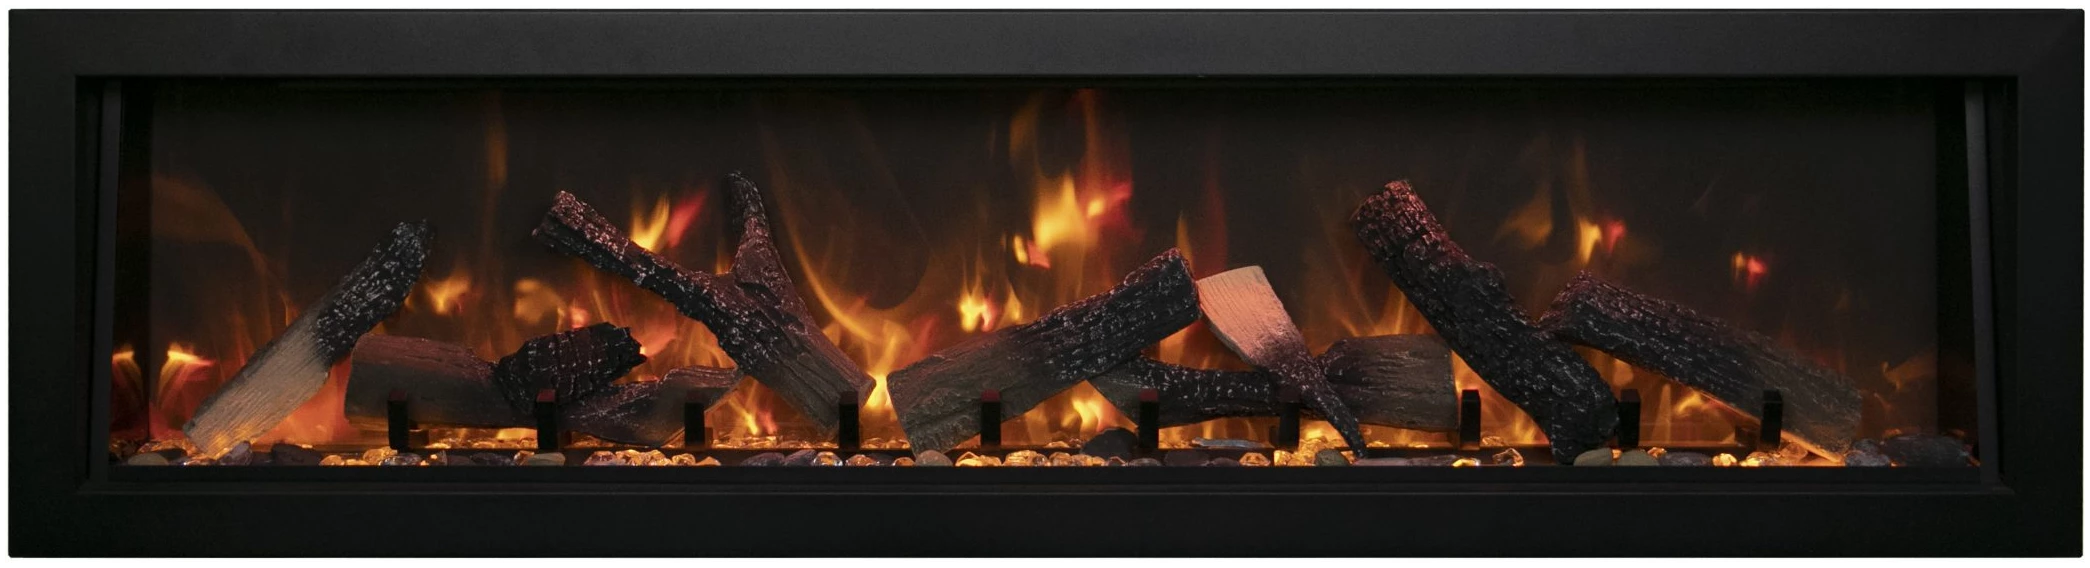 Amantii Panorama BI Deep XT Smart Electric fireplace